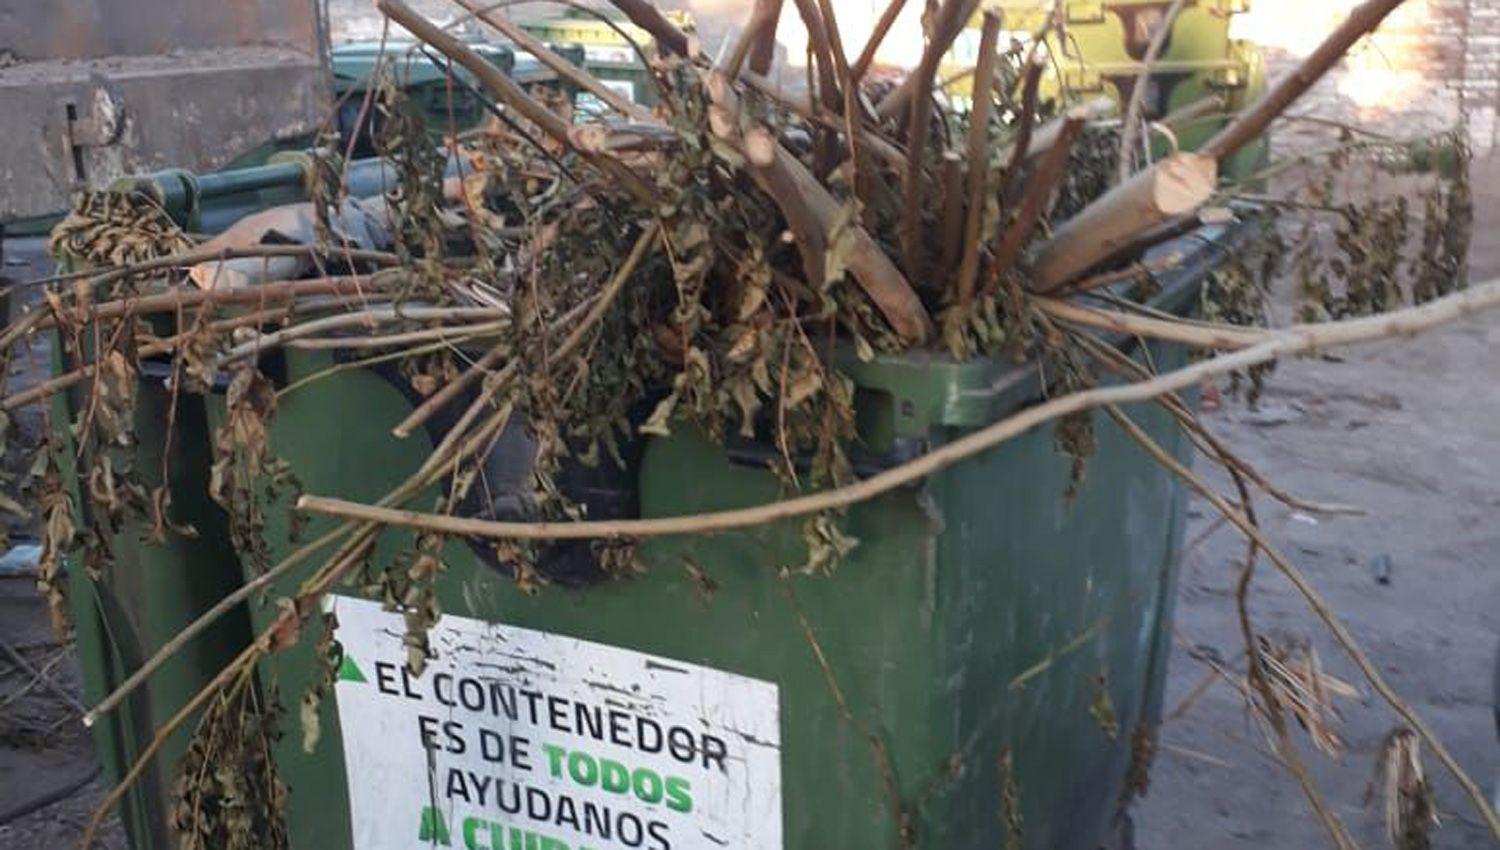 Preocupa la destruccioacuten de contenedores de residuos  a causa del mal uso por parte de algunos vecinos